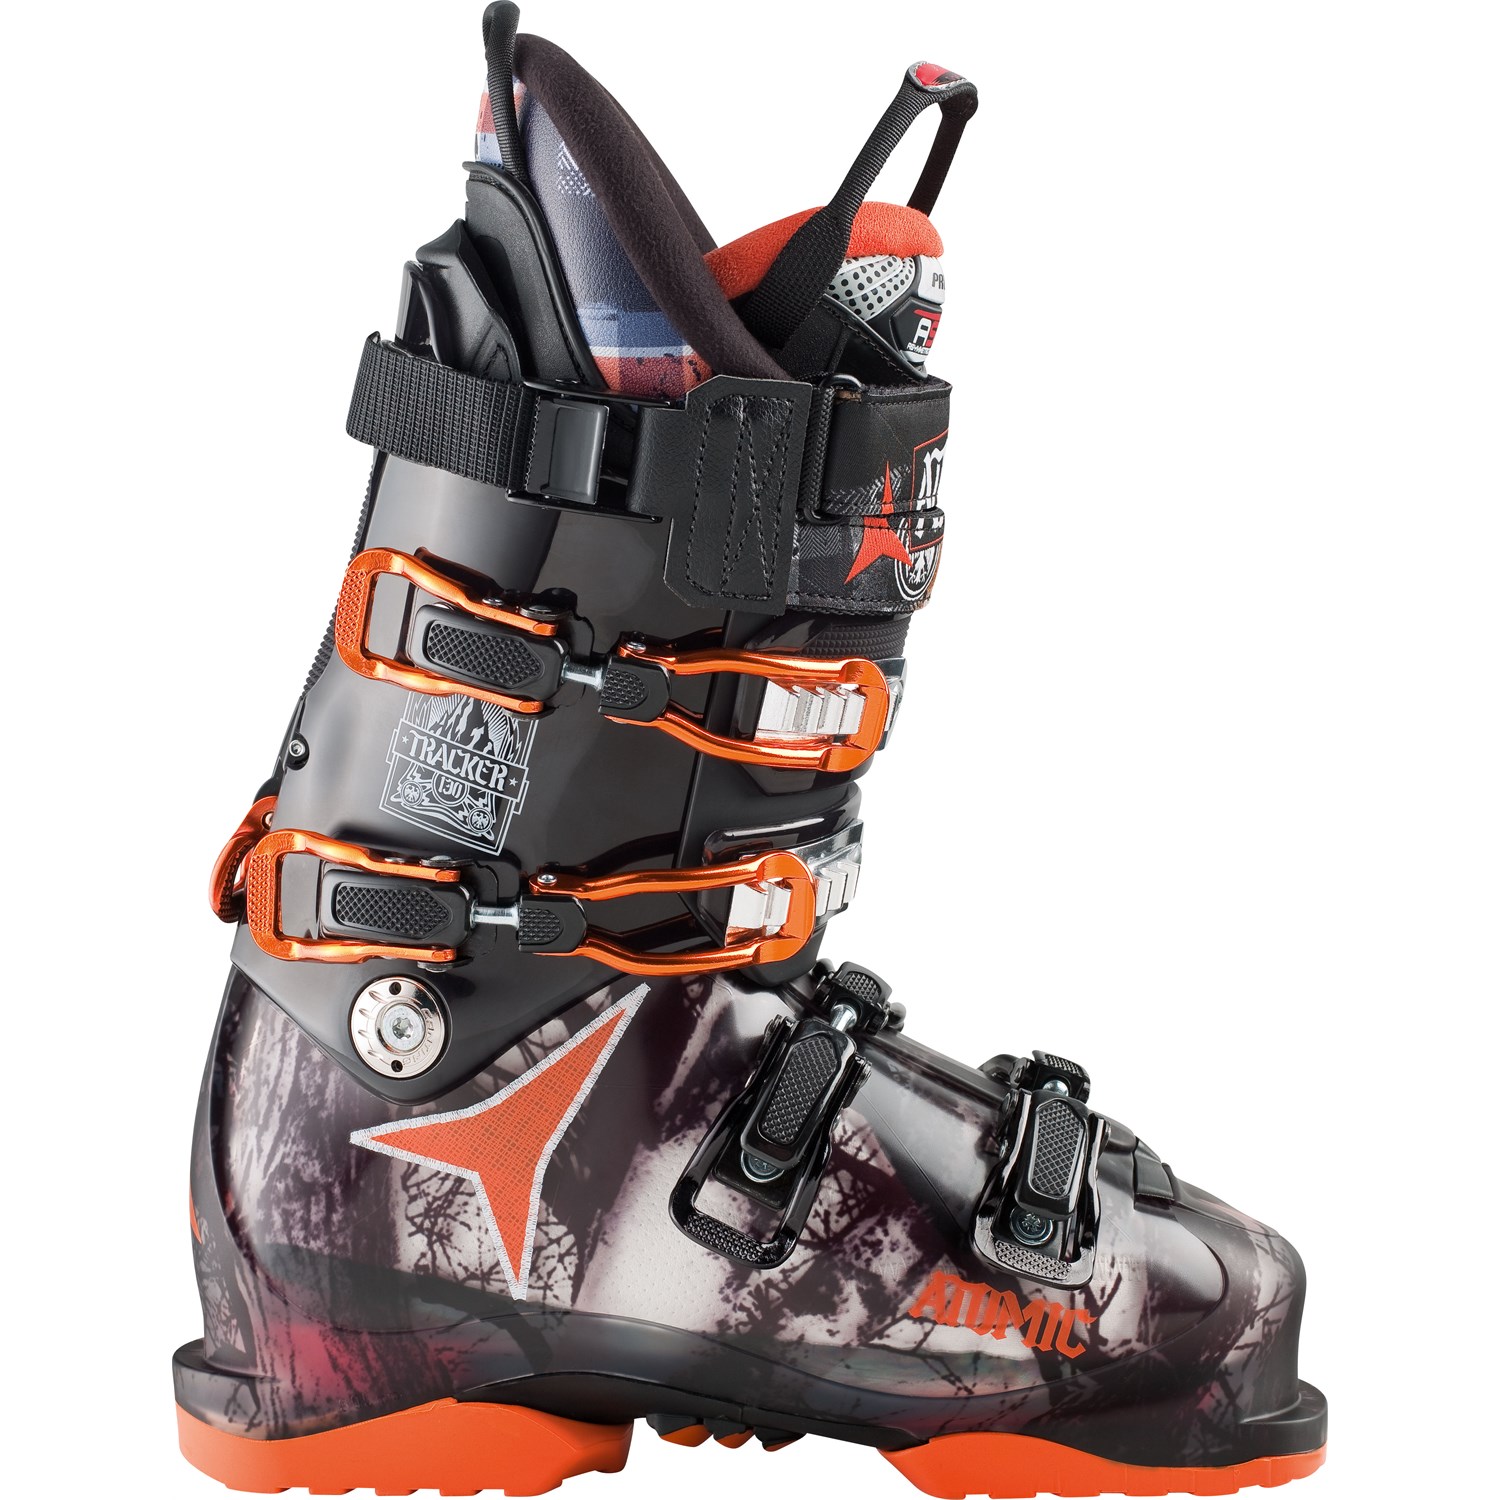 Atomic Tracker 90 Women's Ski Boots Mondo 23.5 New Size 6.5 